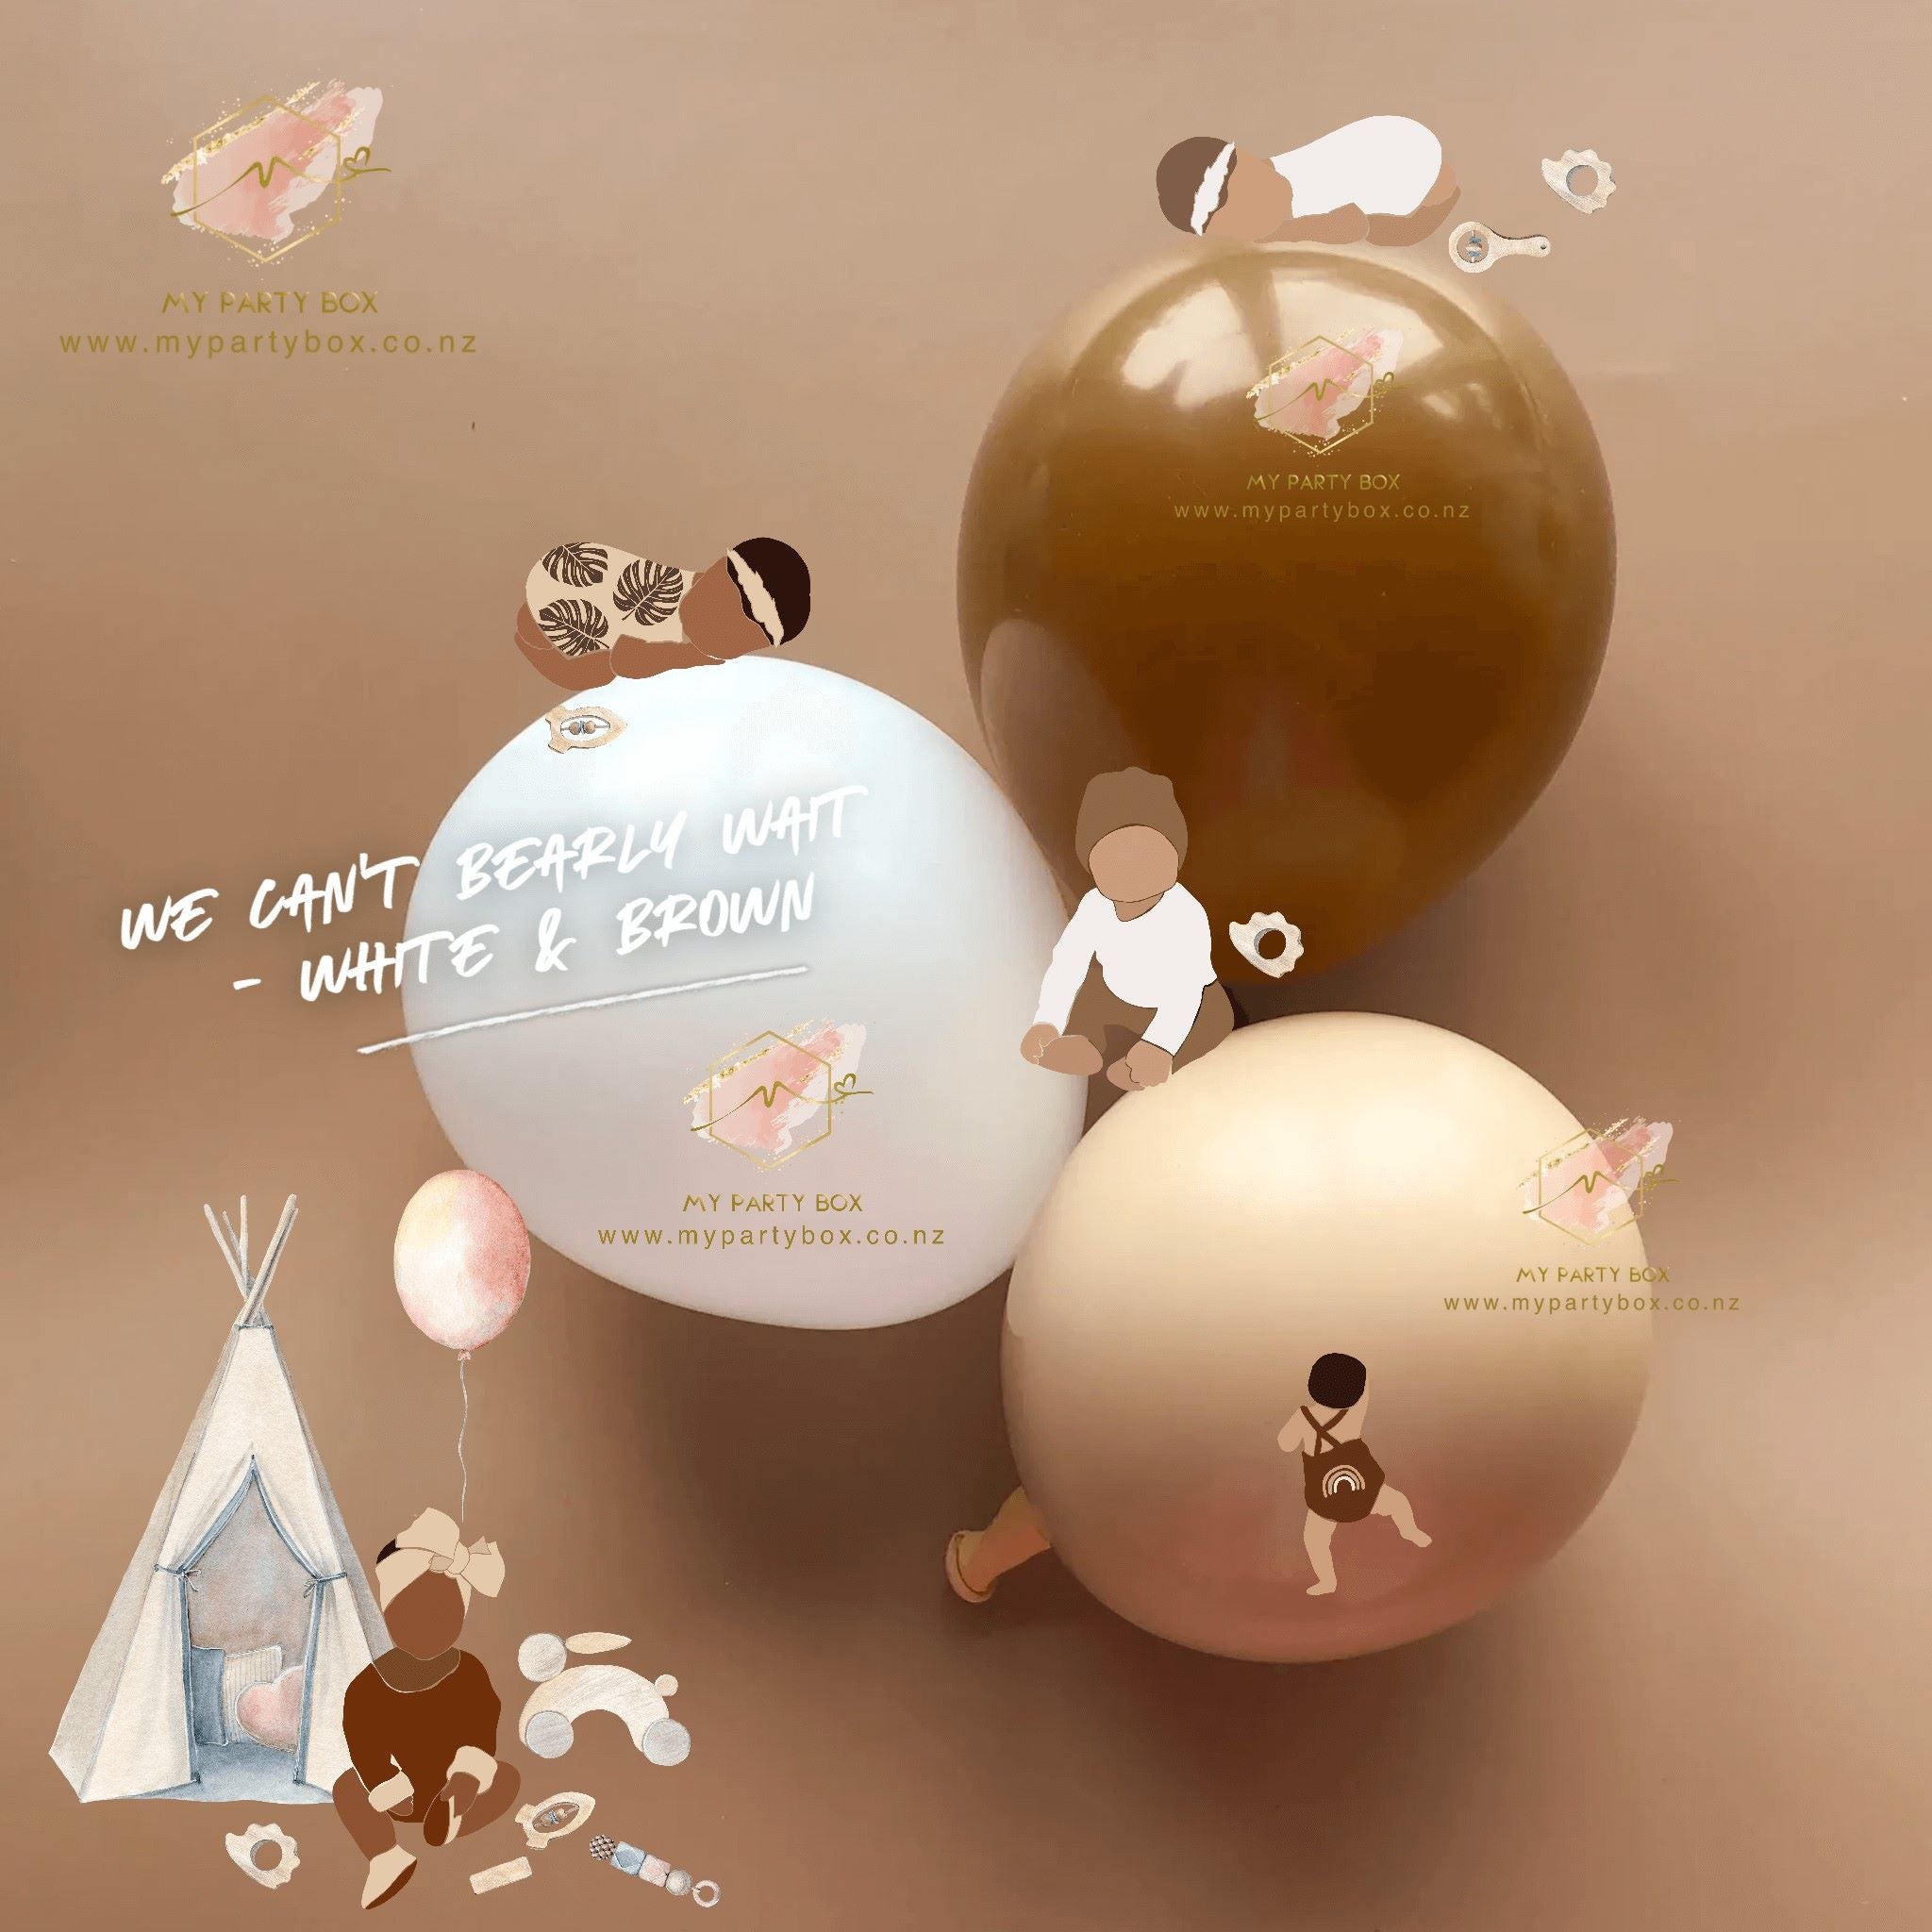 We Can't Bearly Wait Gender Reveal Balloon Garland DIY Kit - White, Blush & Brown Latex Balloons